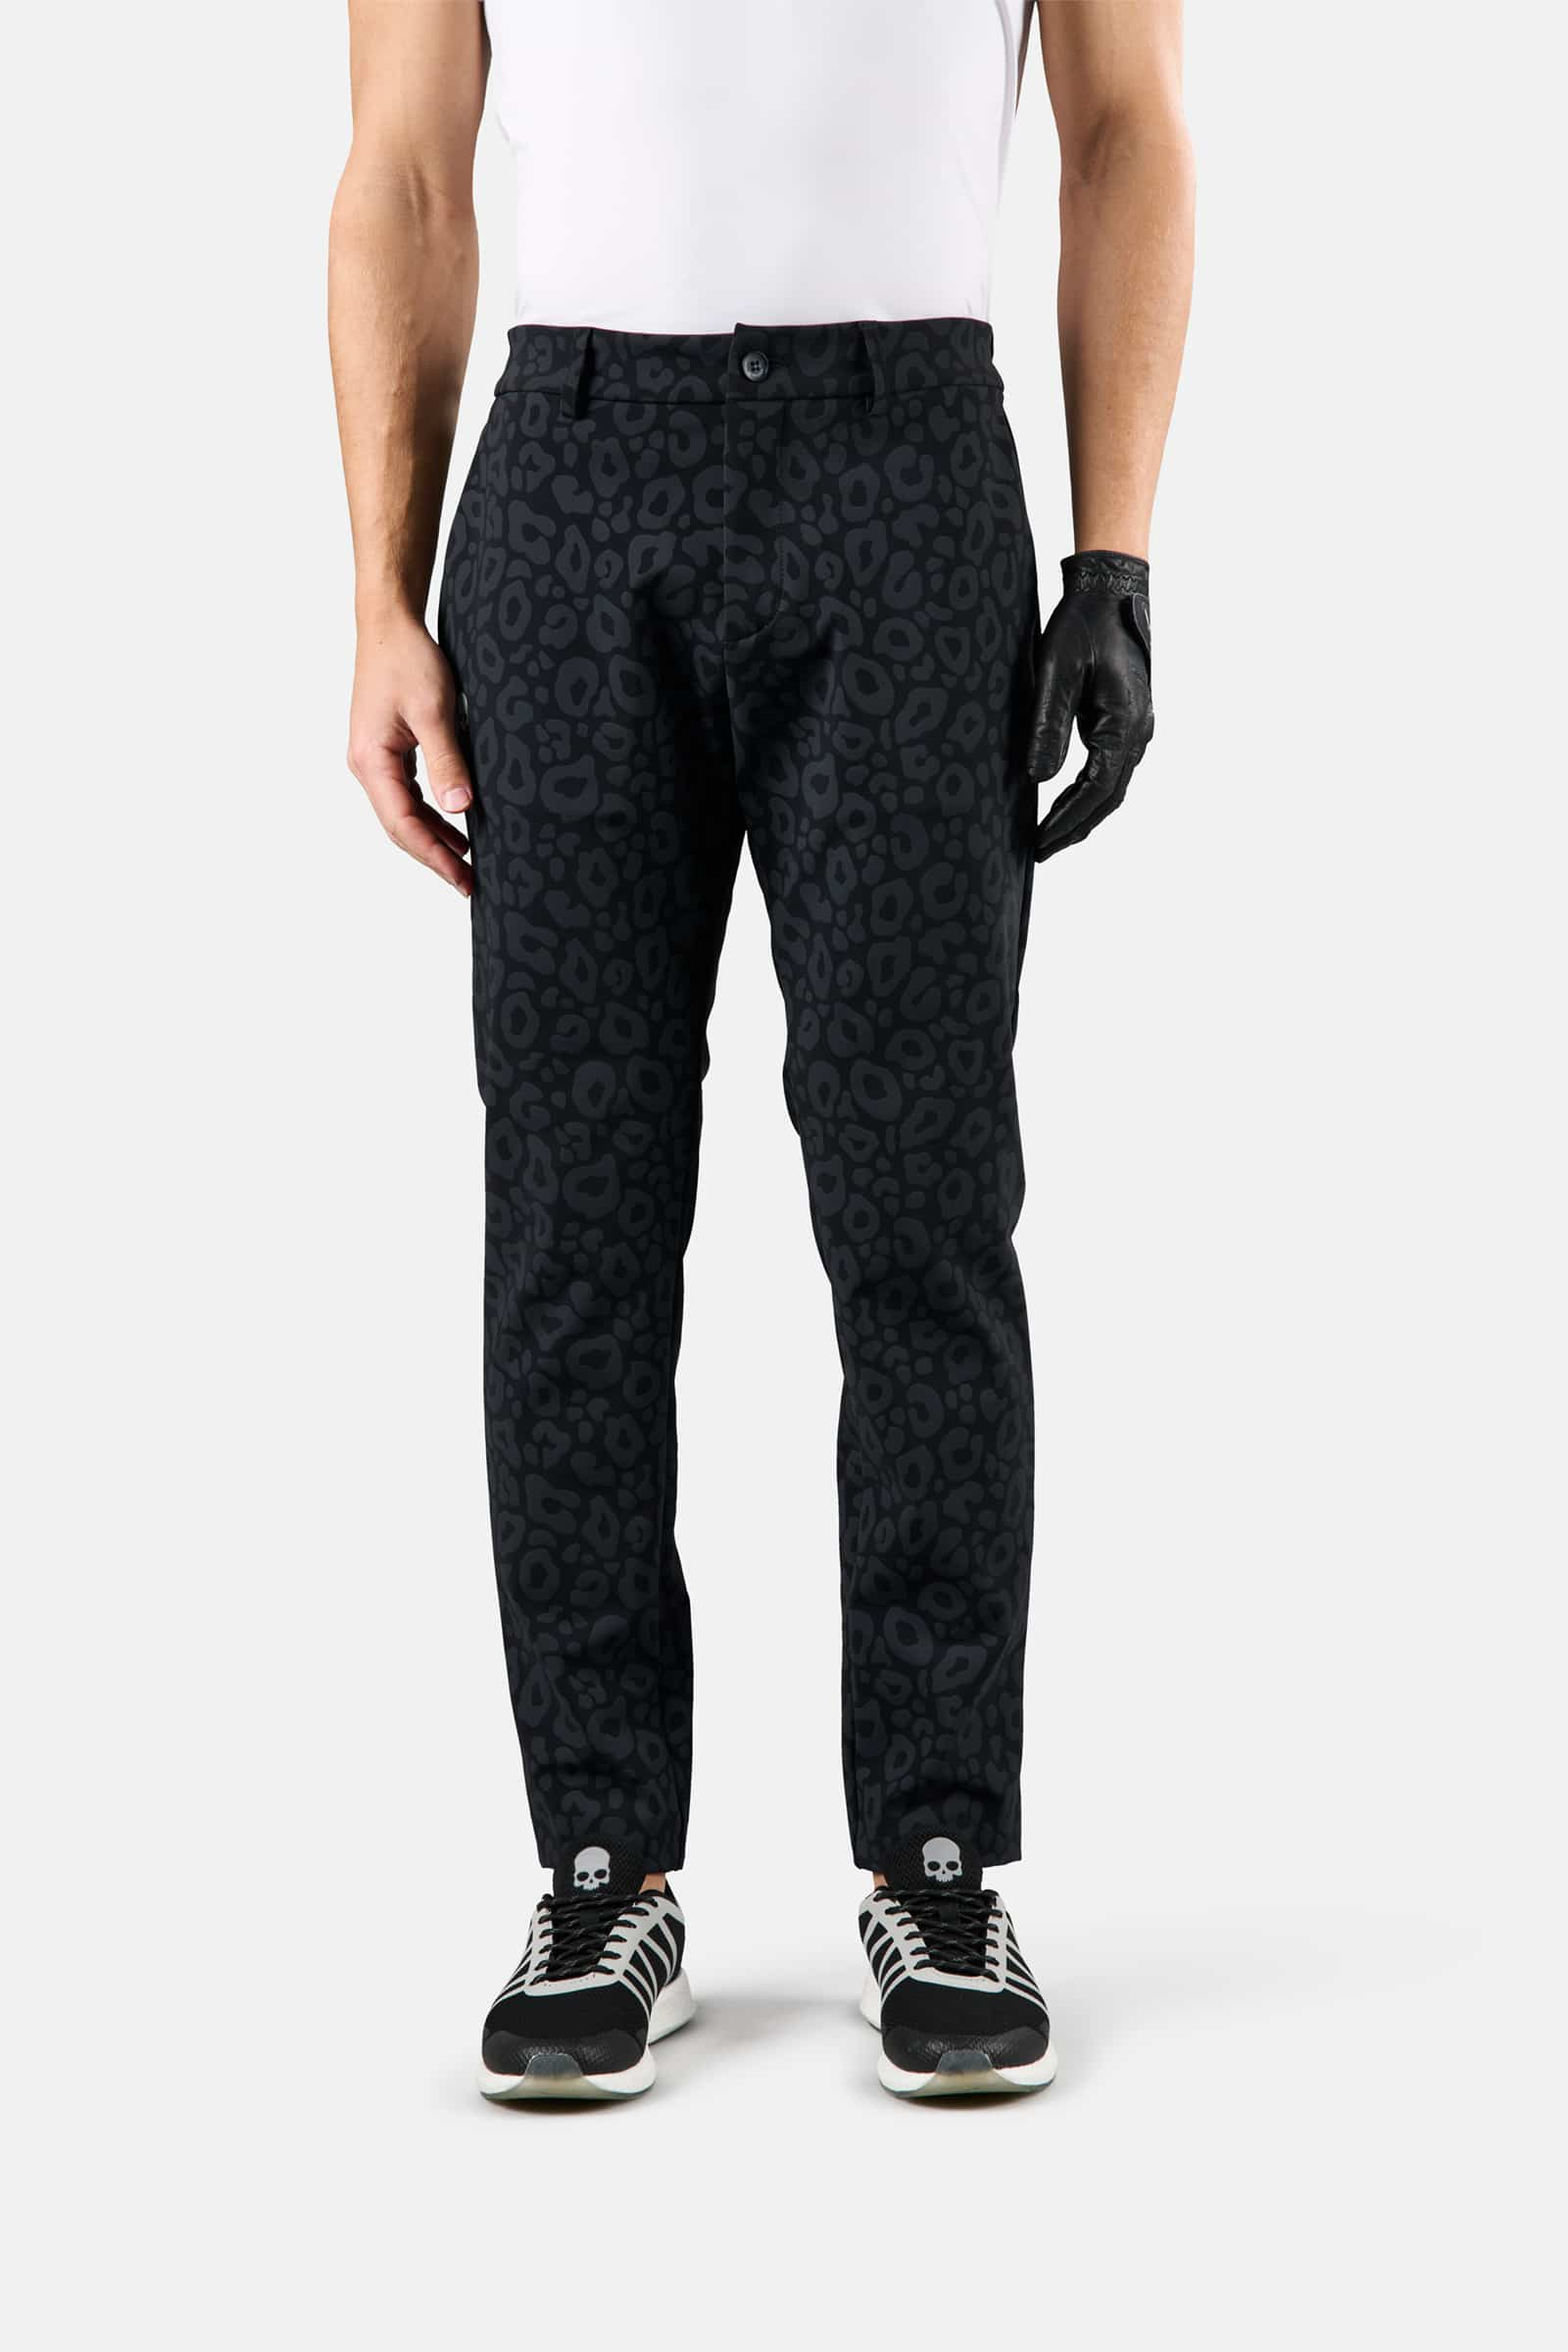 WINTER GOLF TECH PANTS - Apparel - Hydrogen - Luxury Sportwear